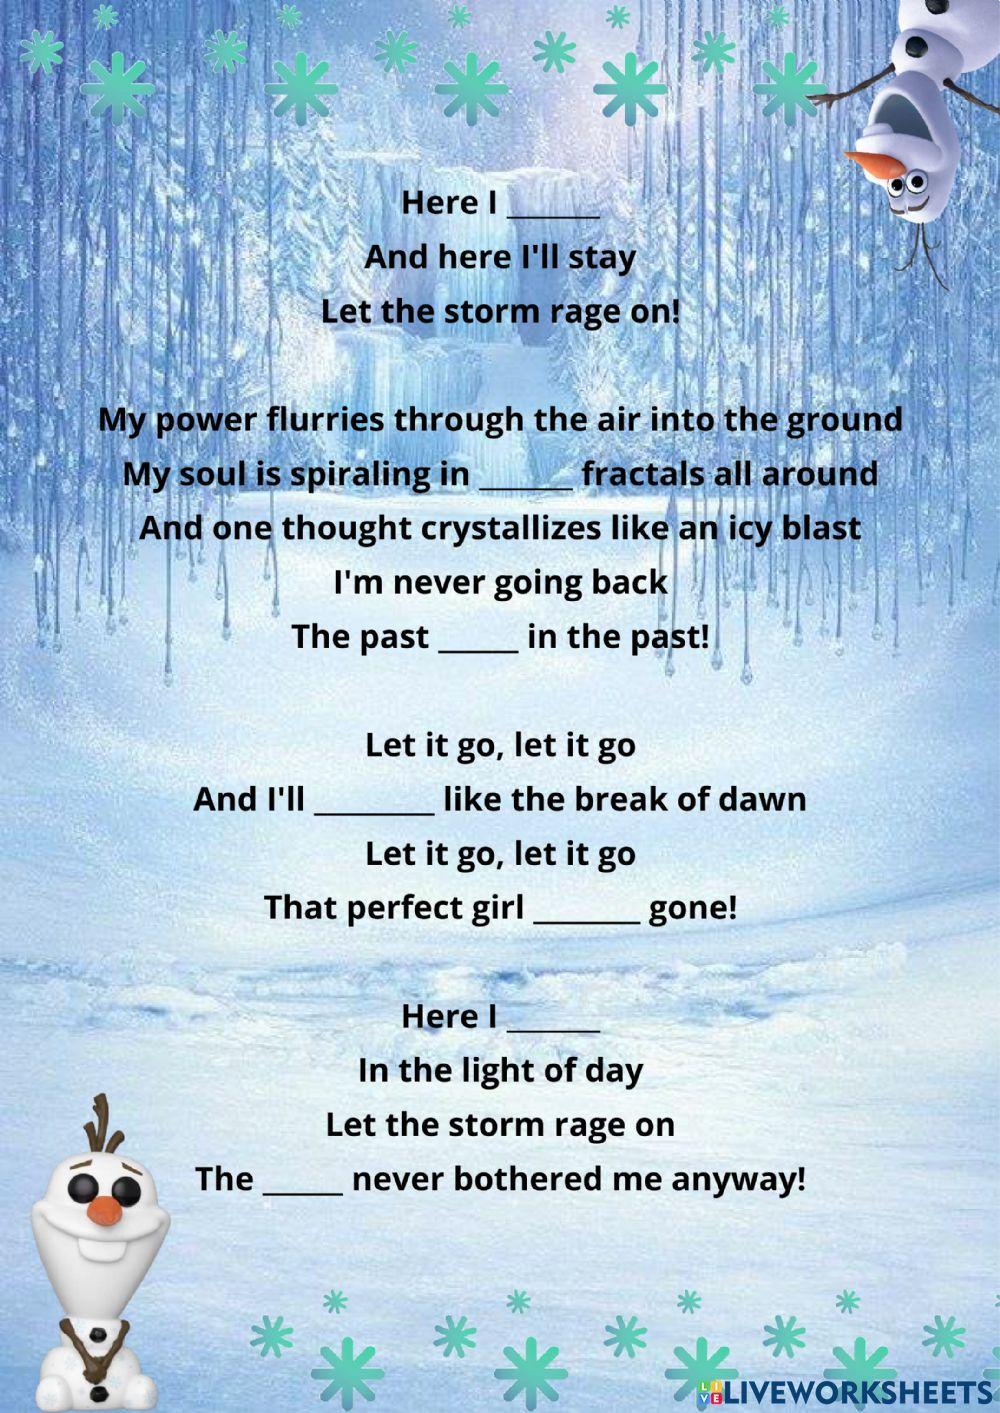 Let it go - Frozen